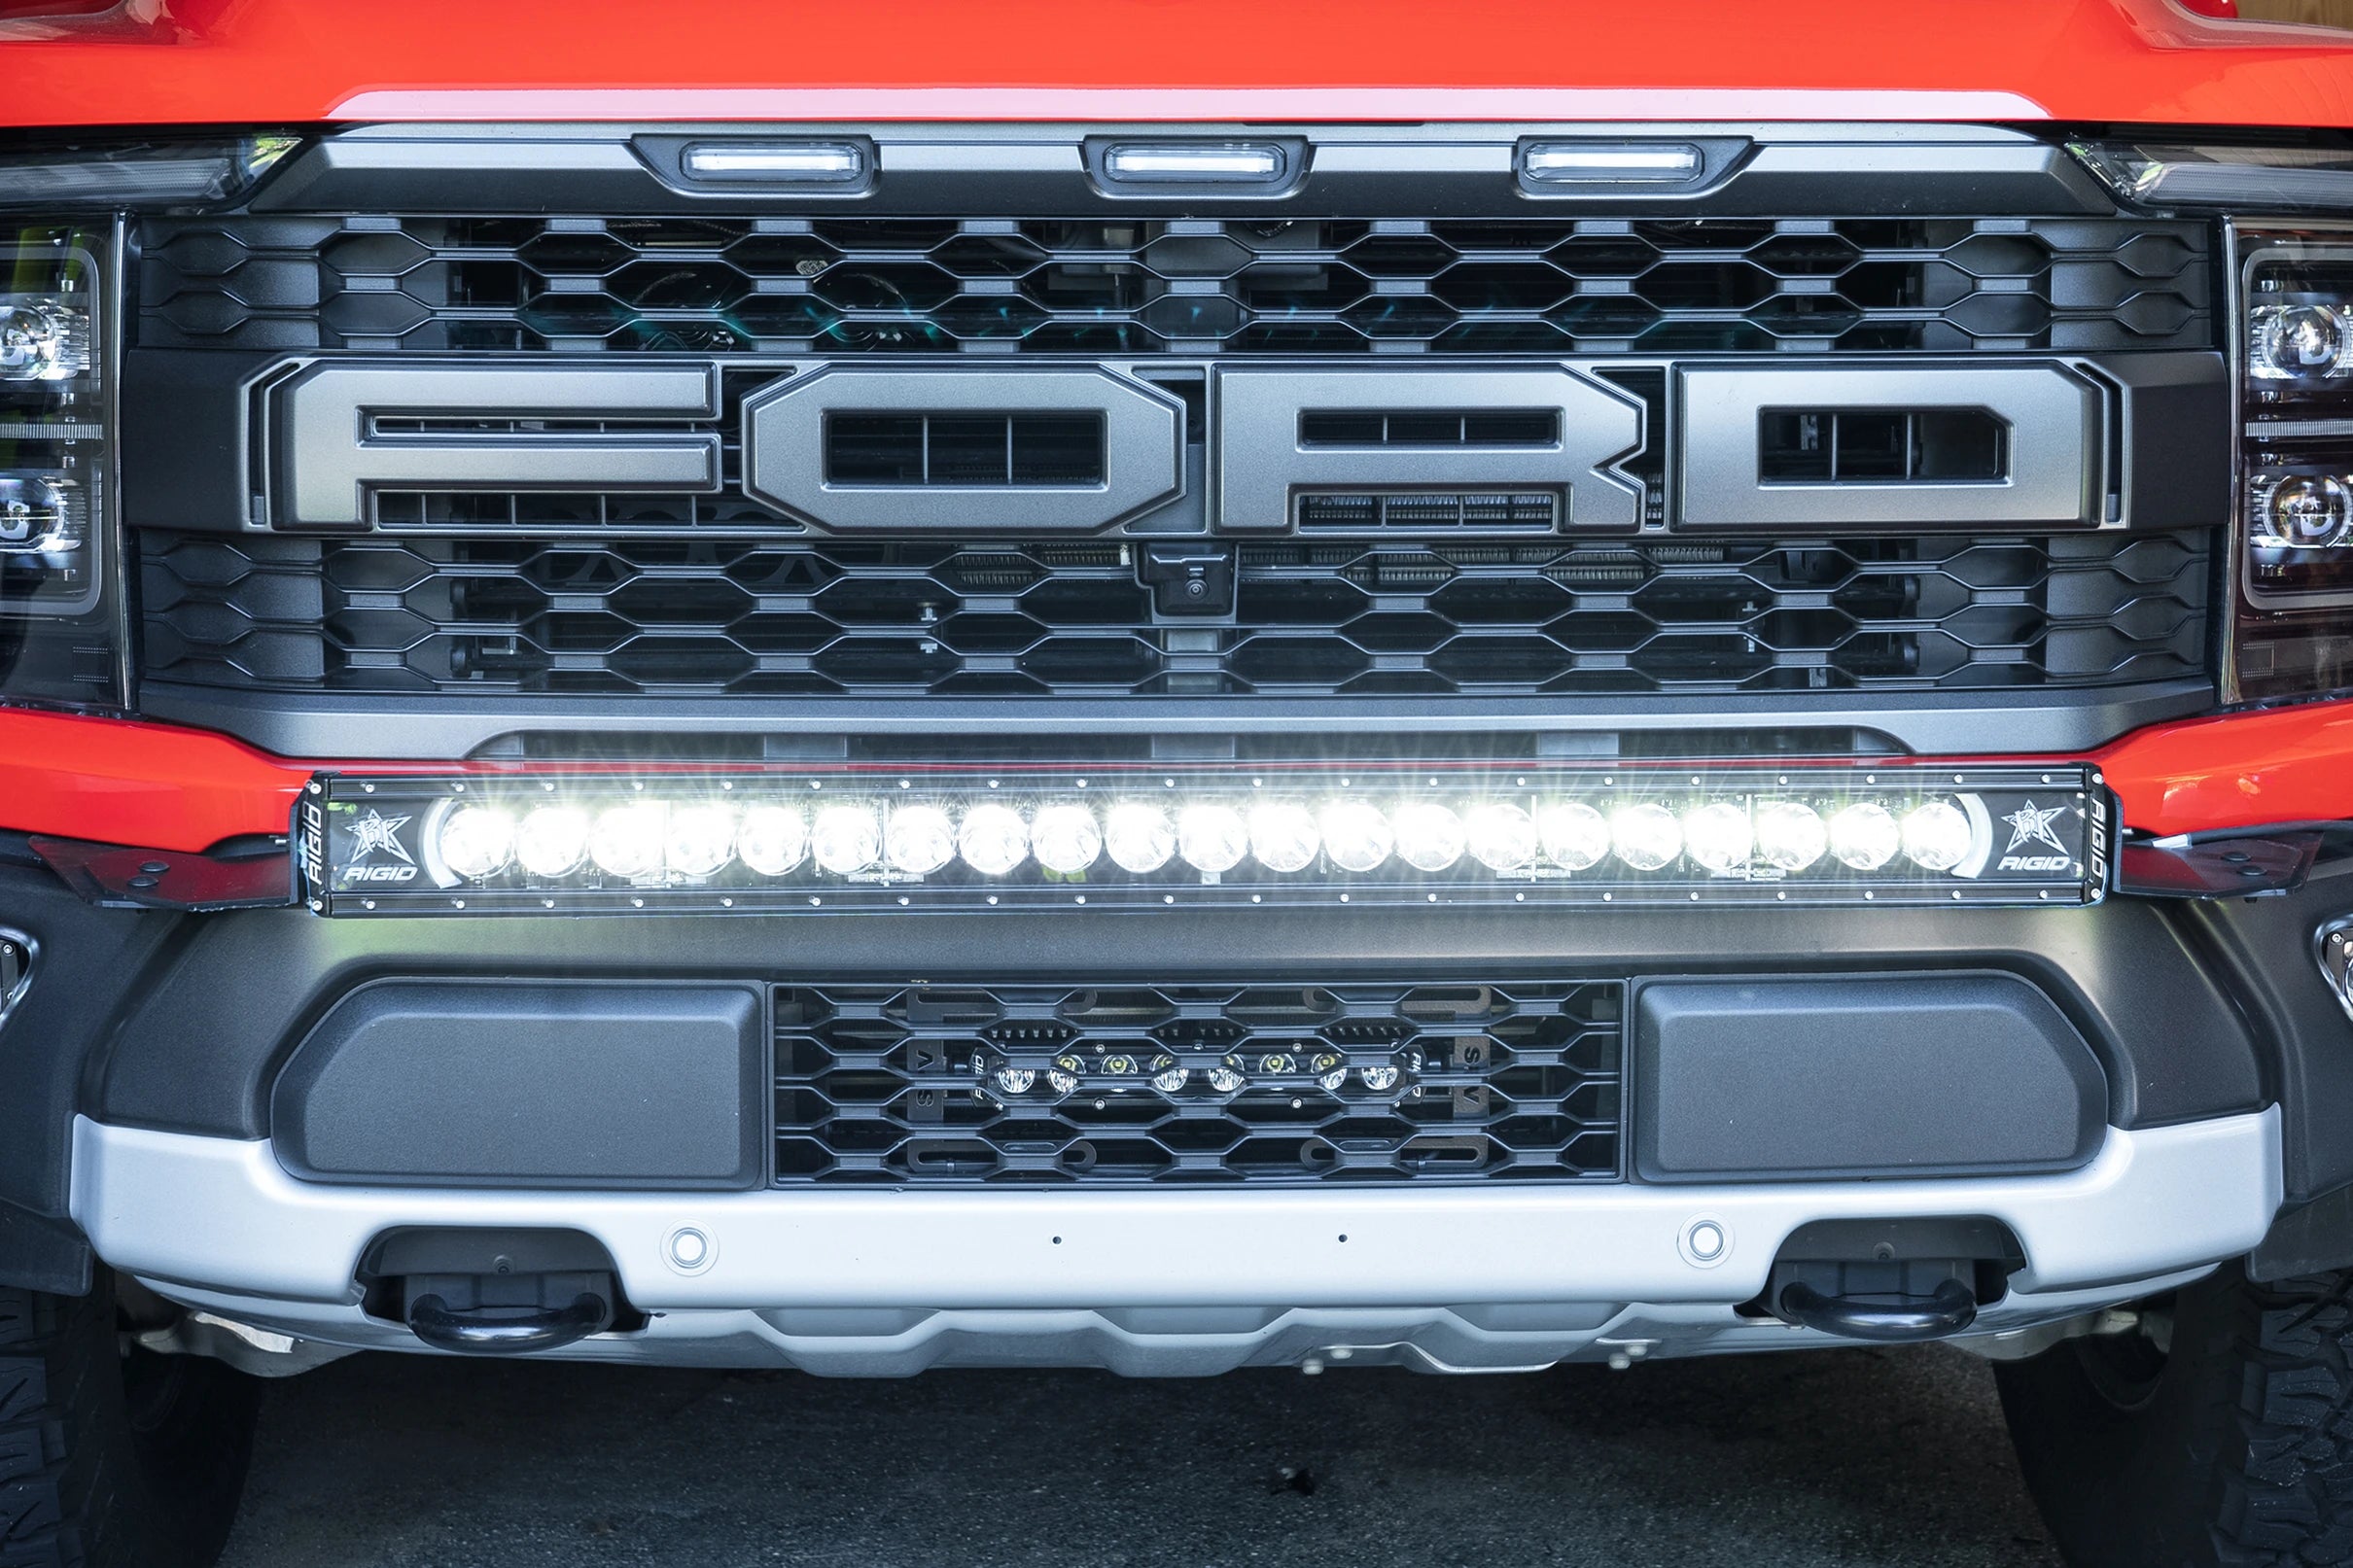 SPV Parts 2021+ Gen 3 Ford Raptor Bumper Bracket Kit for 40 & 50 inch light bars